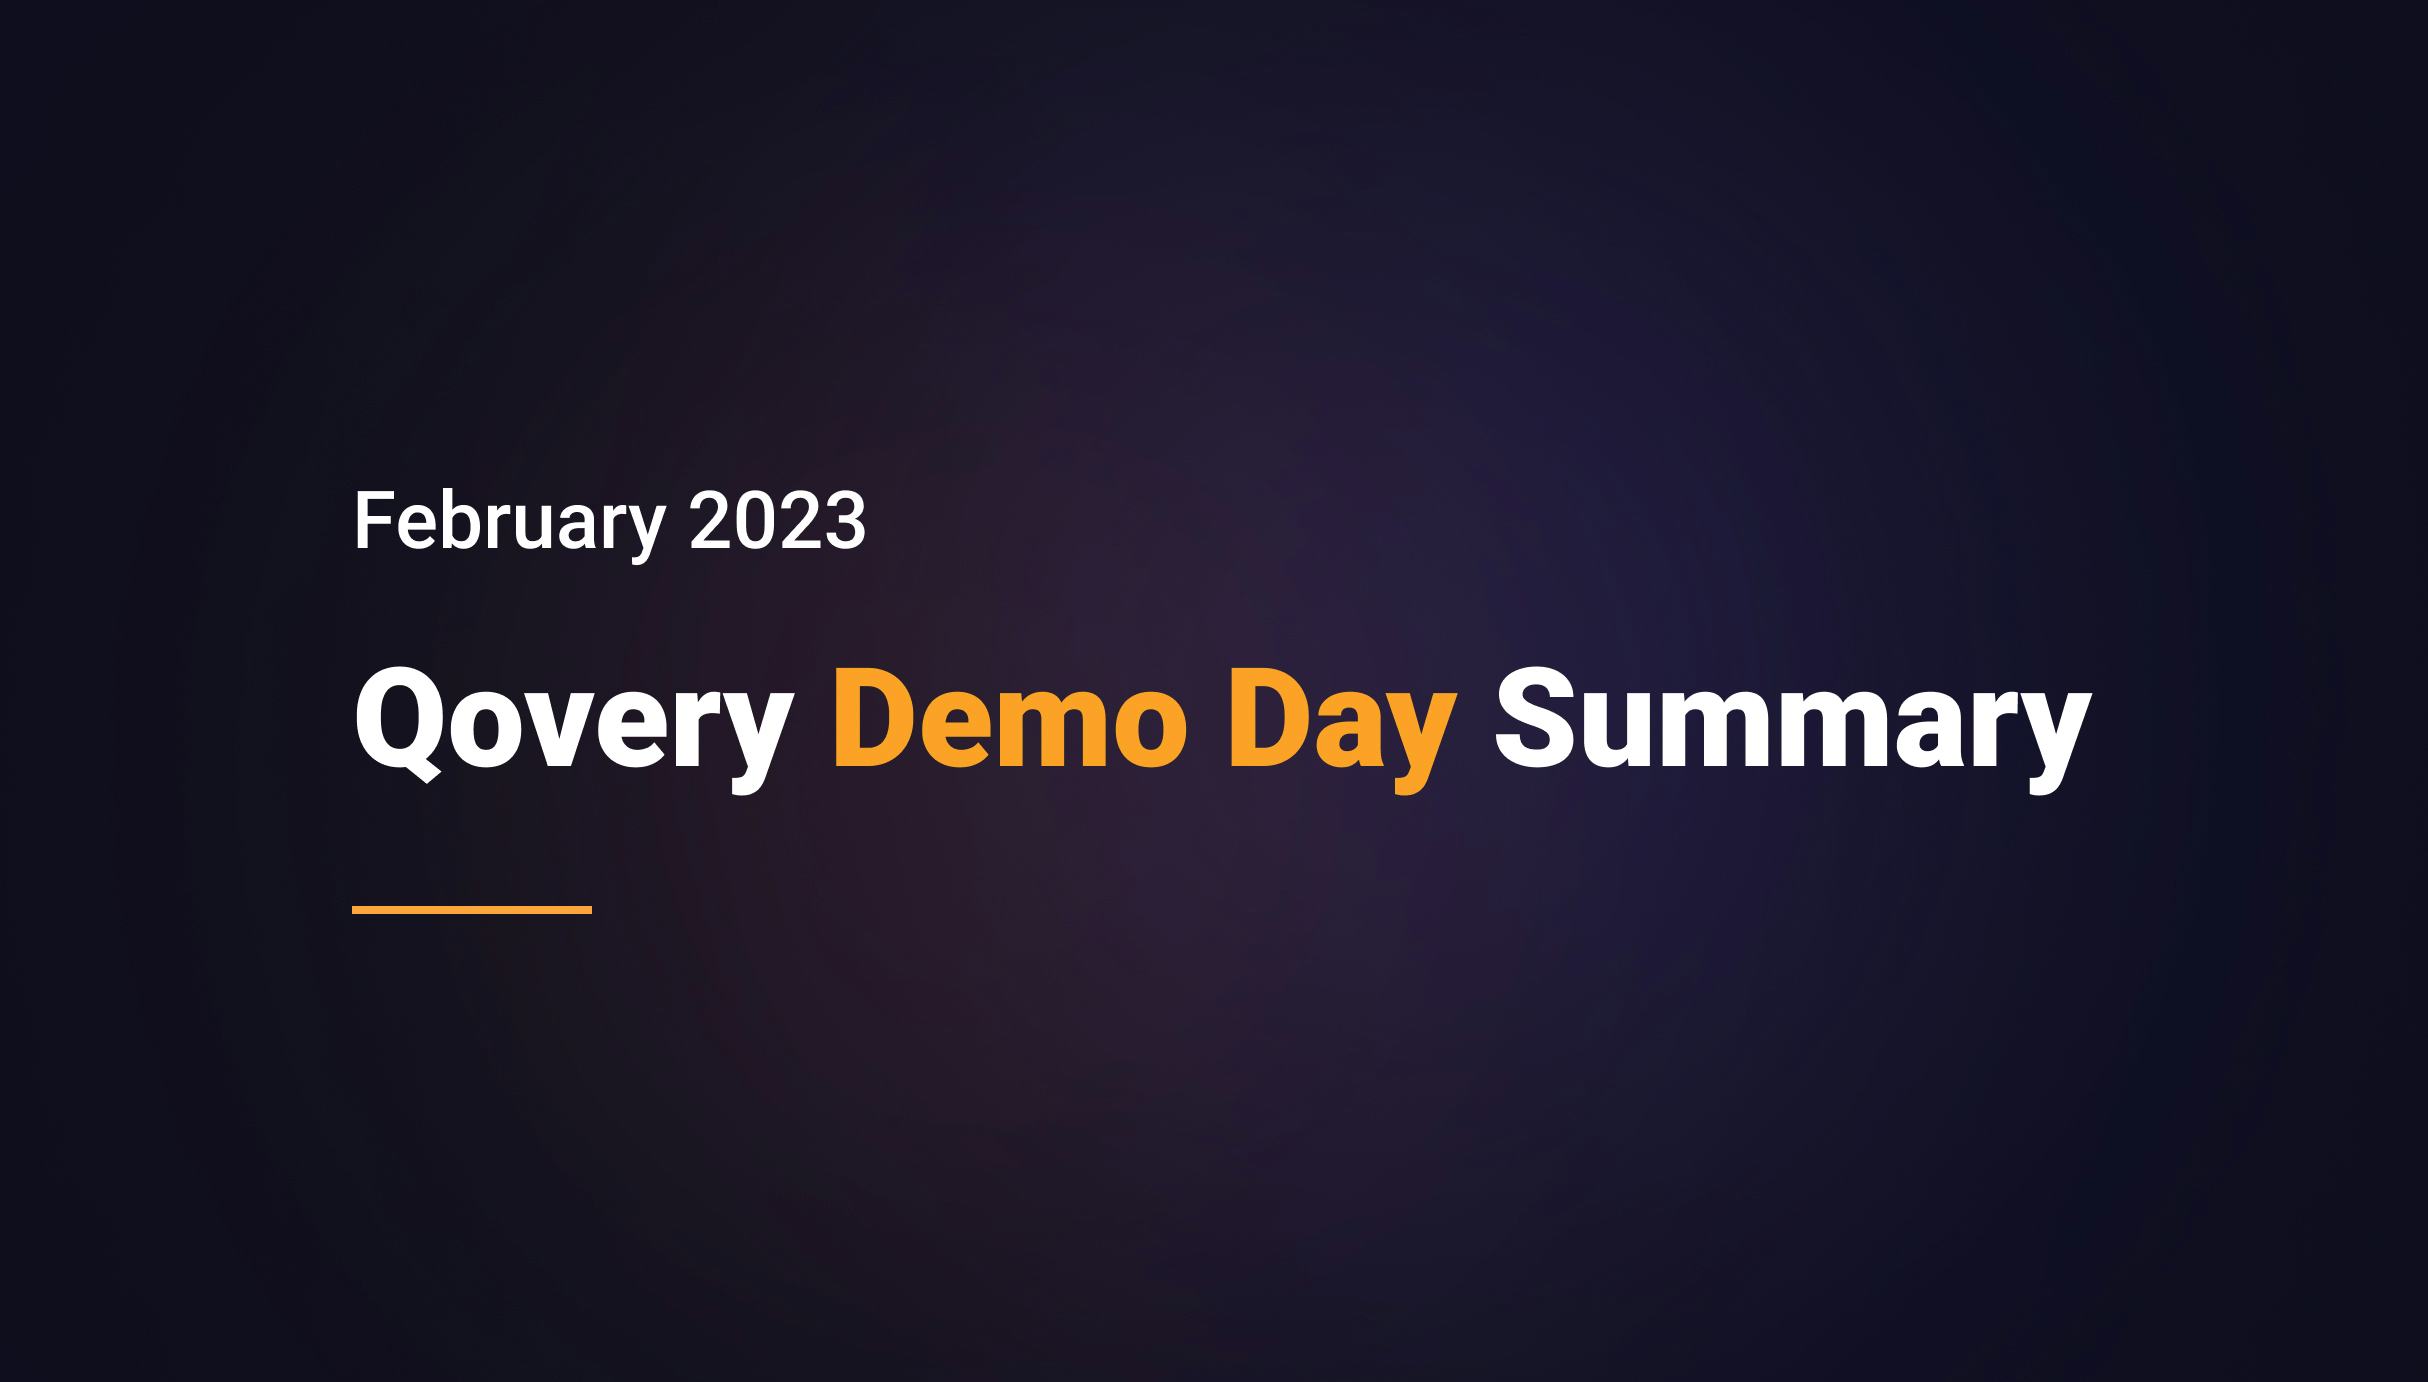 Qovery Demo Day Summary - February 2023 - Qovery